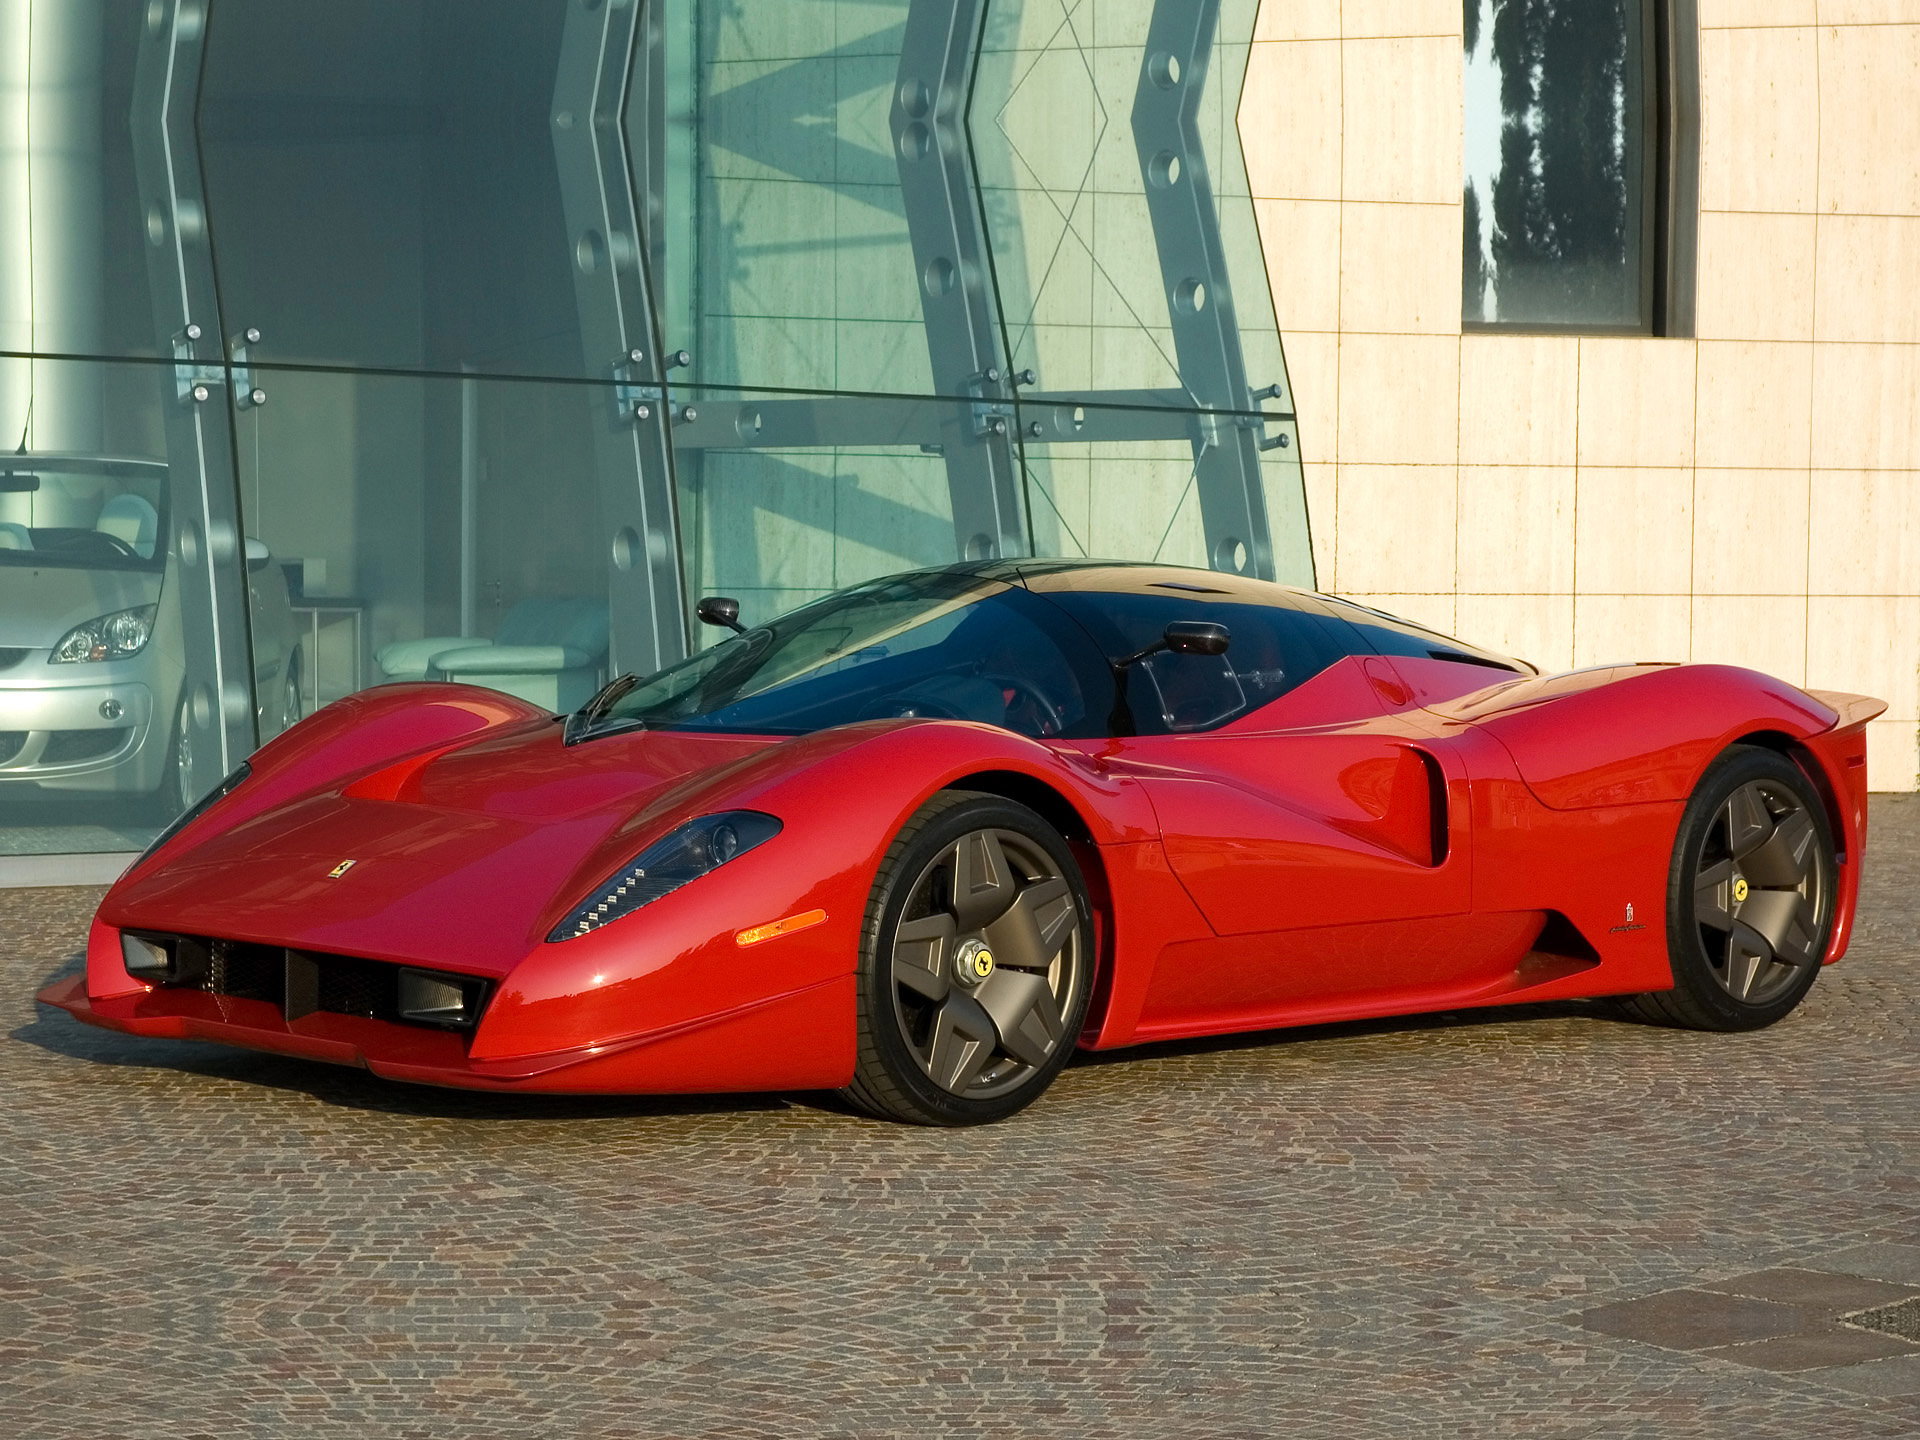 Descargar fondos de escritorio de Concepto Ferrari Pininfarina P4/5 HD